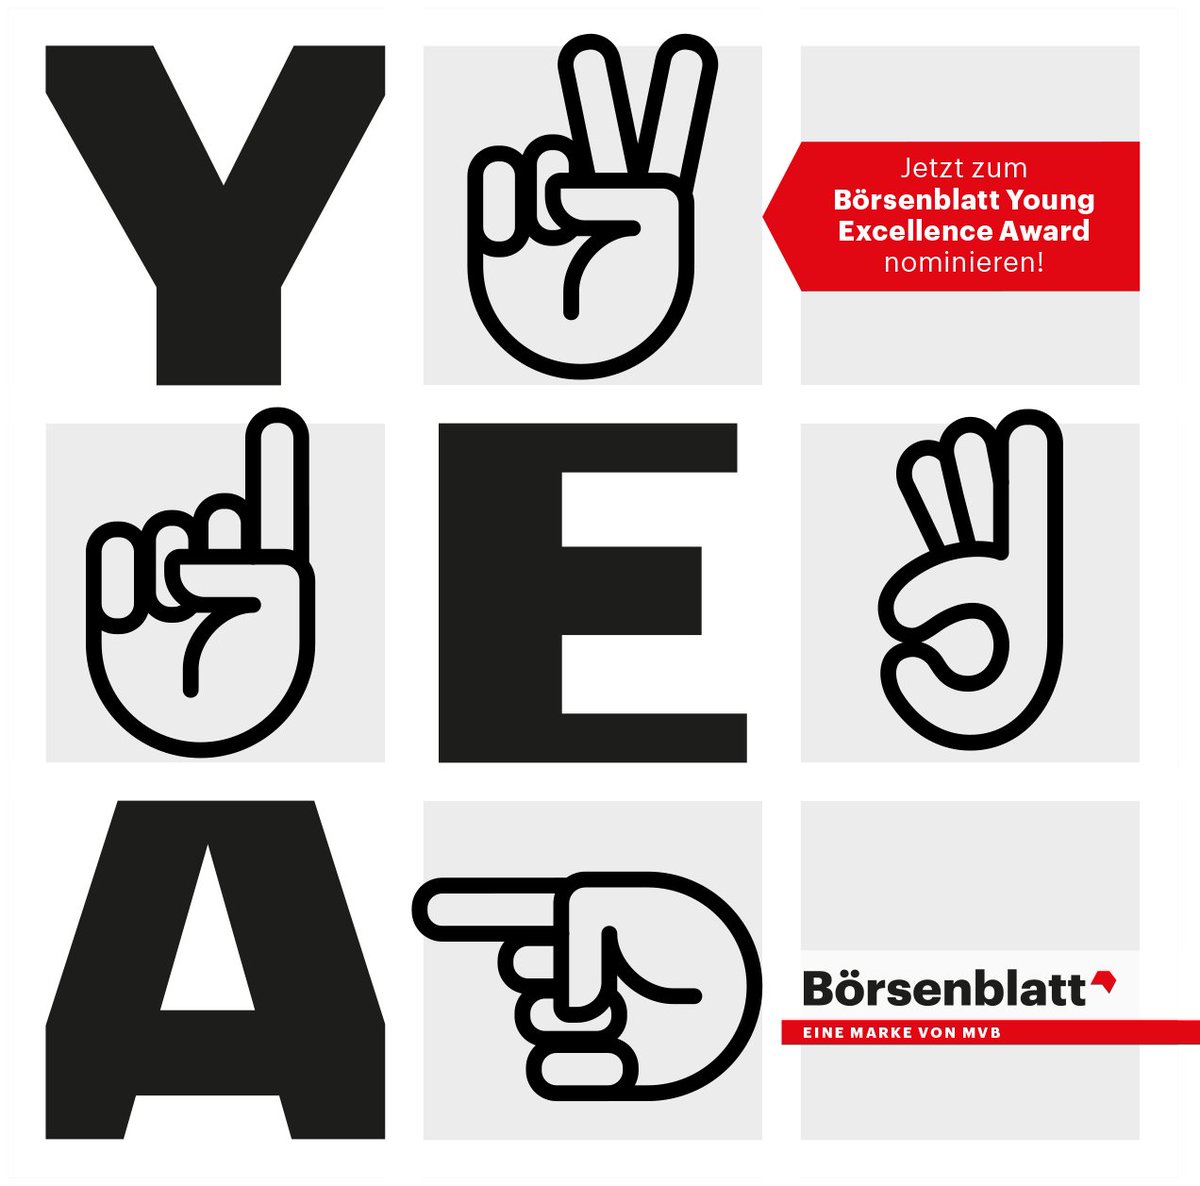 Vorschläge für den Börsenblatt Young Excellence Award 2024 können bis zum 7. Mai eingereicht werden. Gesucht werden Buchmenschen bis 39 Jahre, die Außergewöhnliches leisten. Alle Infos: boersenblatt.net/young-excellen… #yea24 #fbm24 @boev